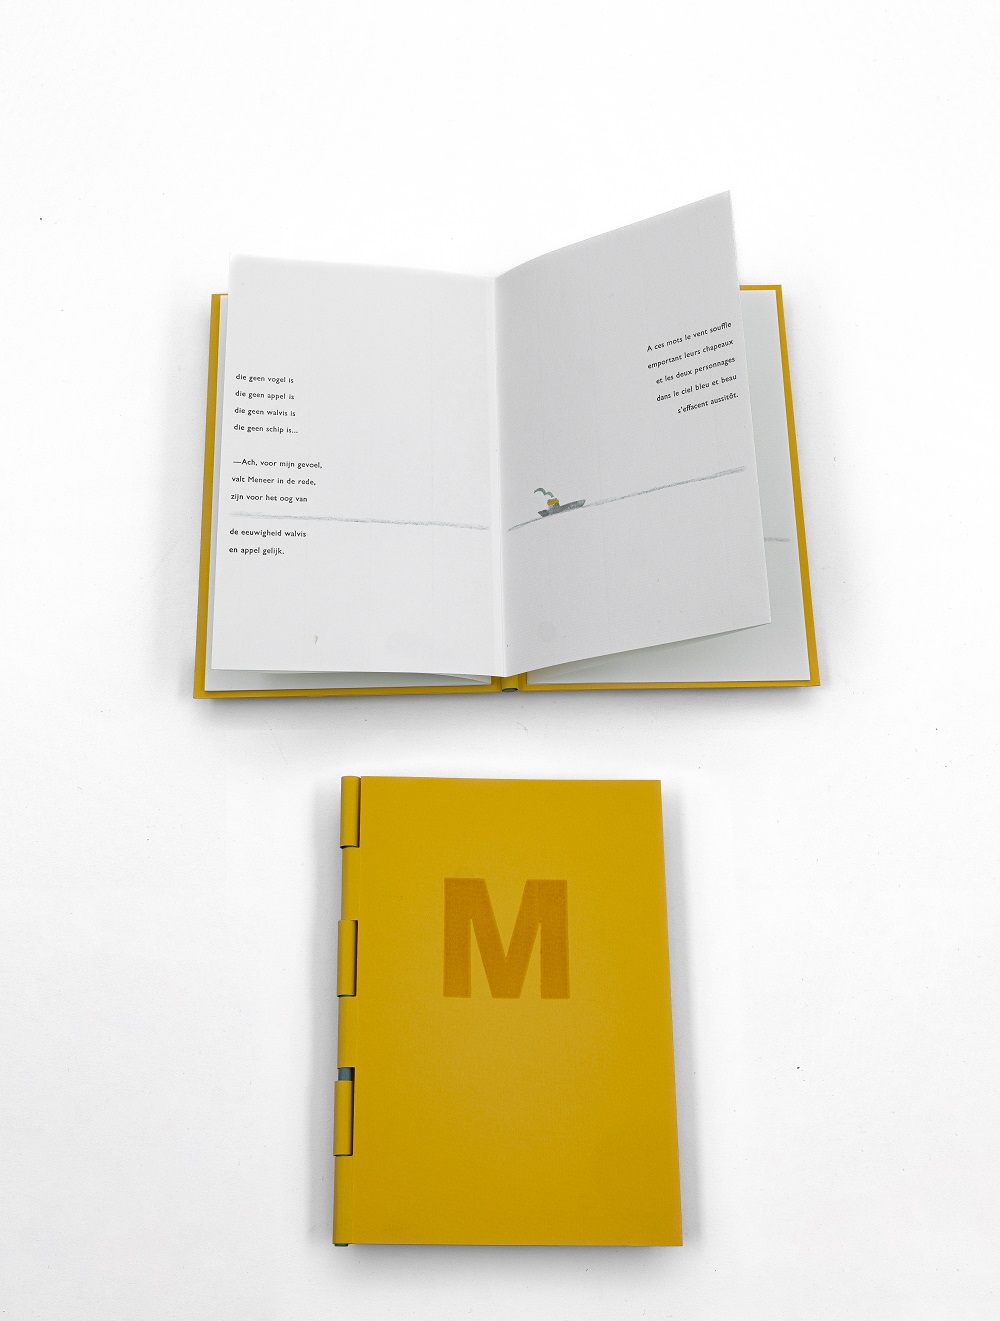 Jean Tardieu, ‘Meneer meneer aan zee’, vertaling Rein Bloem, keuze Marlies Louwes, 2010